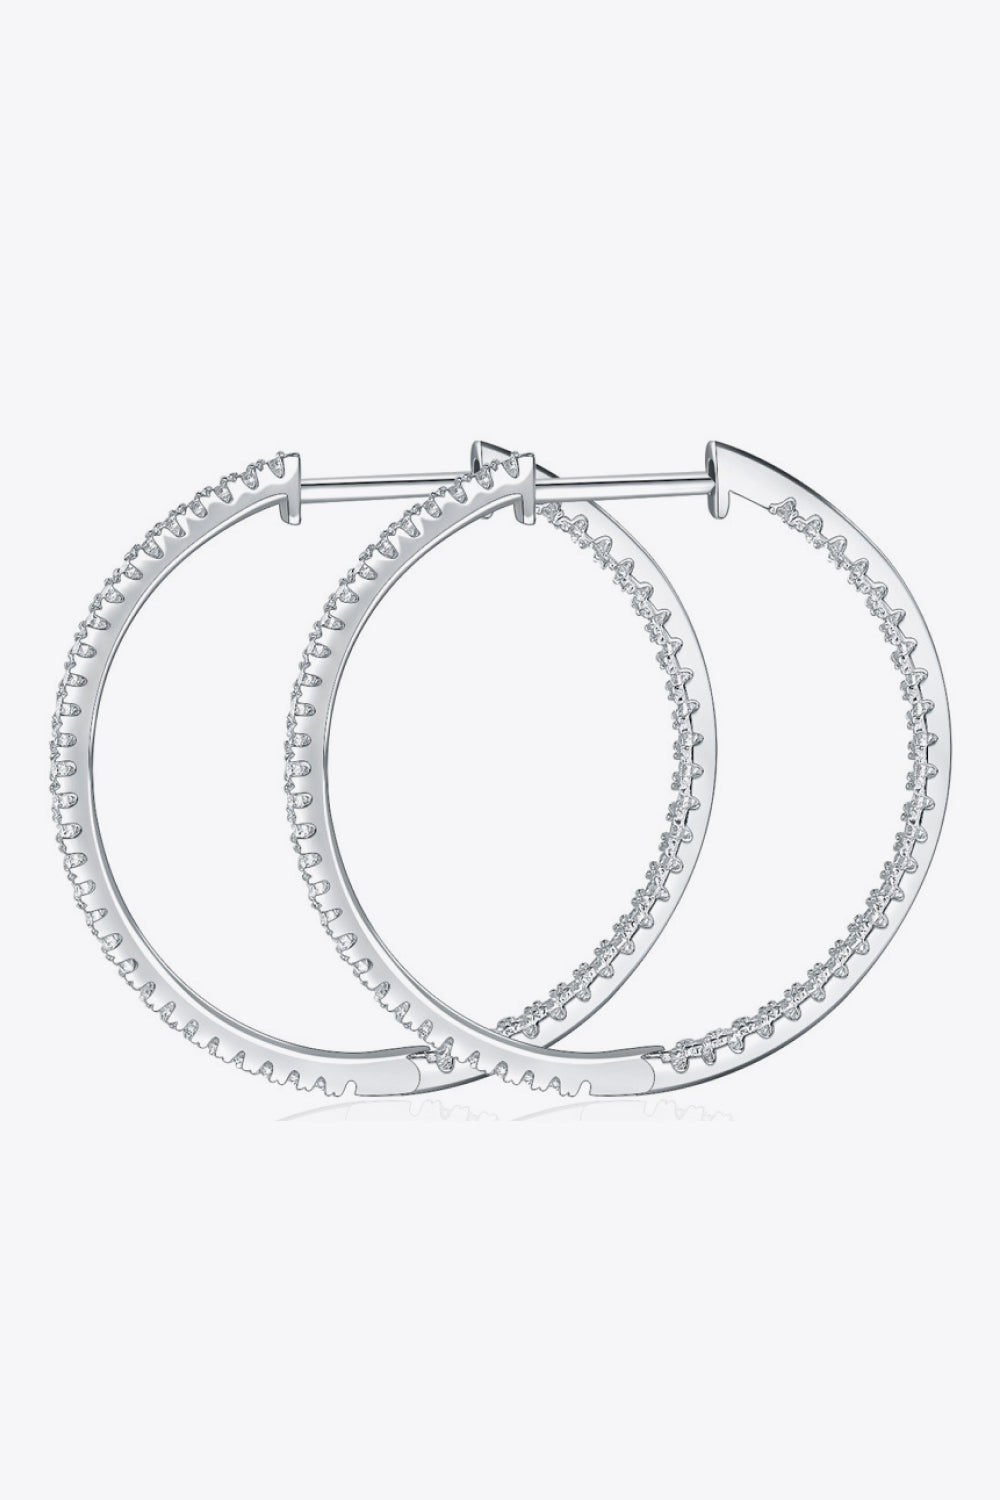 Inlaid Moissanite 925 Sterling Silver Hoop Earrings - Earrings - FITGGINS